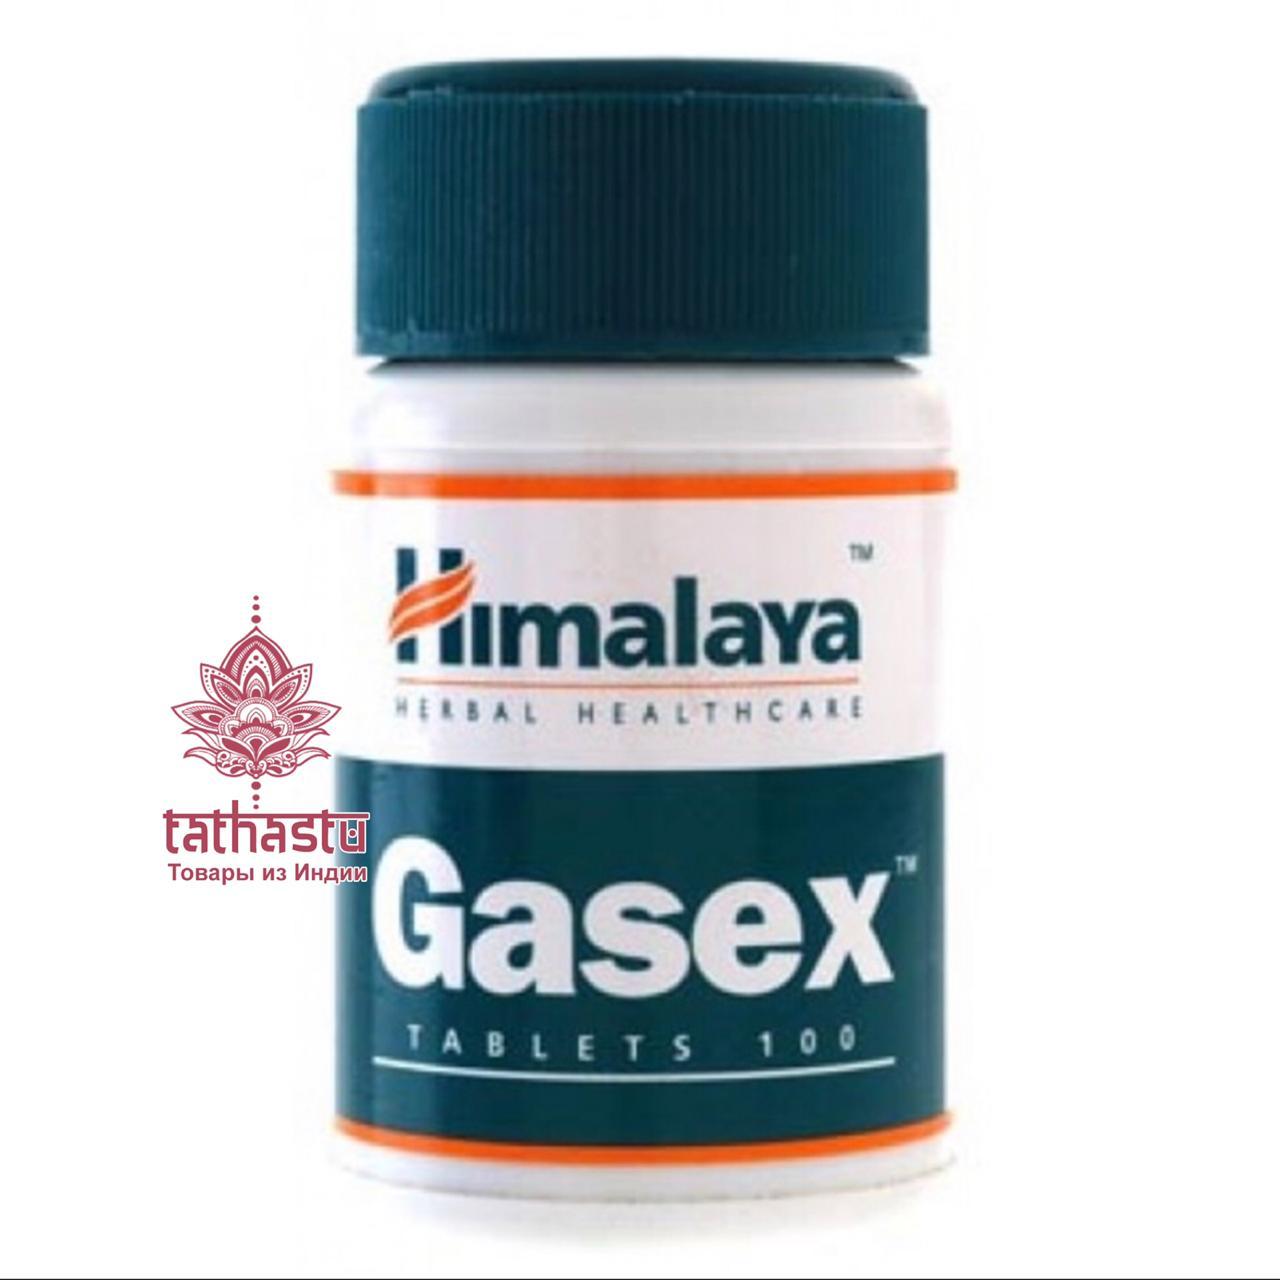 Газекс – препарат для нормализации деятельности пищеварительного тракта. Tathastu товары и индии